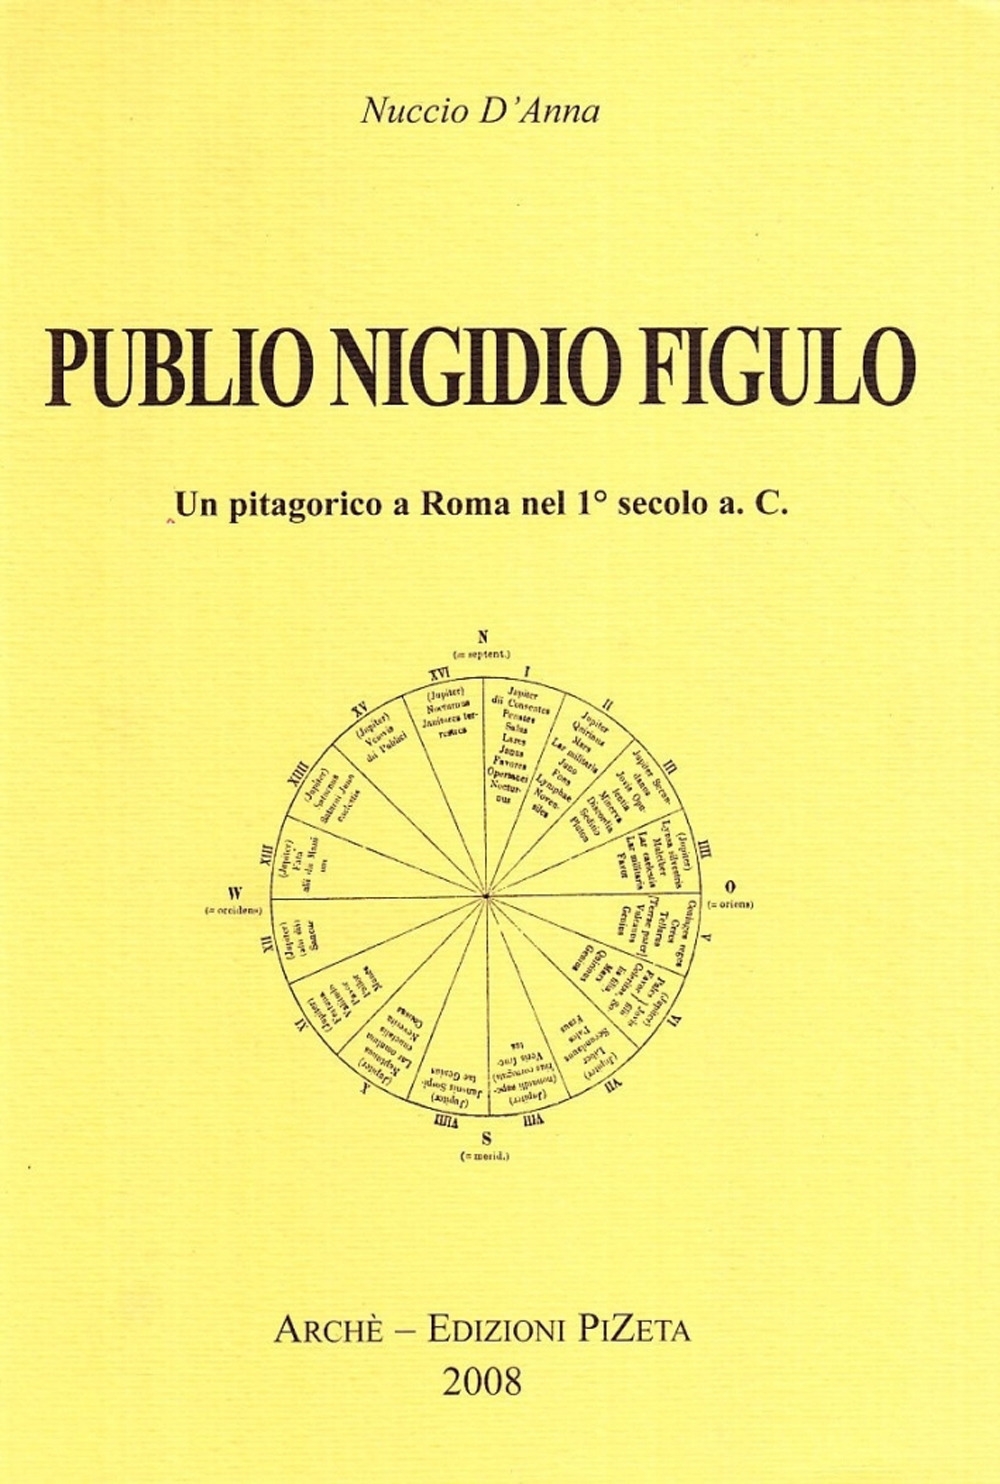 Publio Nigidio Figulo. Un pitagorico a Roma nel 1°secolo a. C - D'Anna, Nuccio